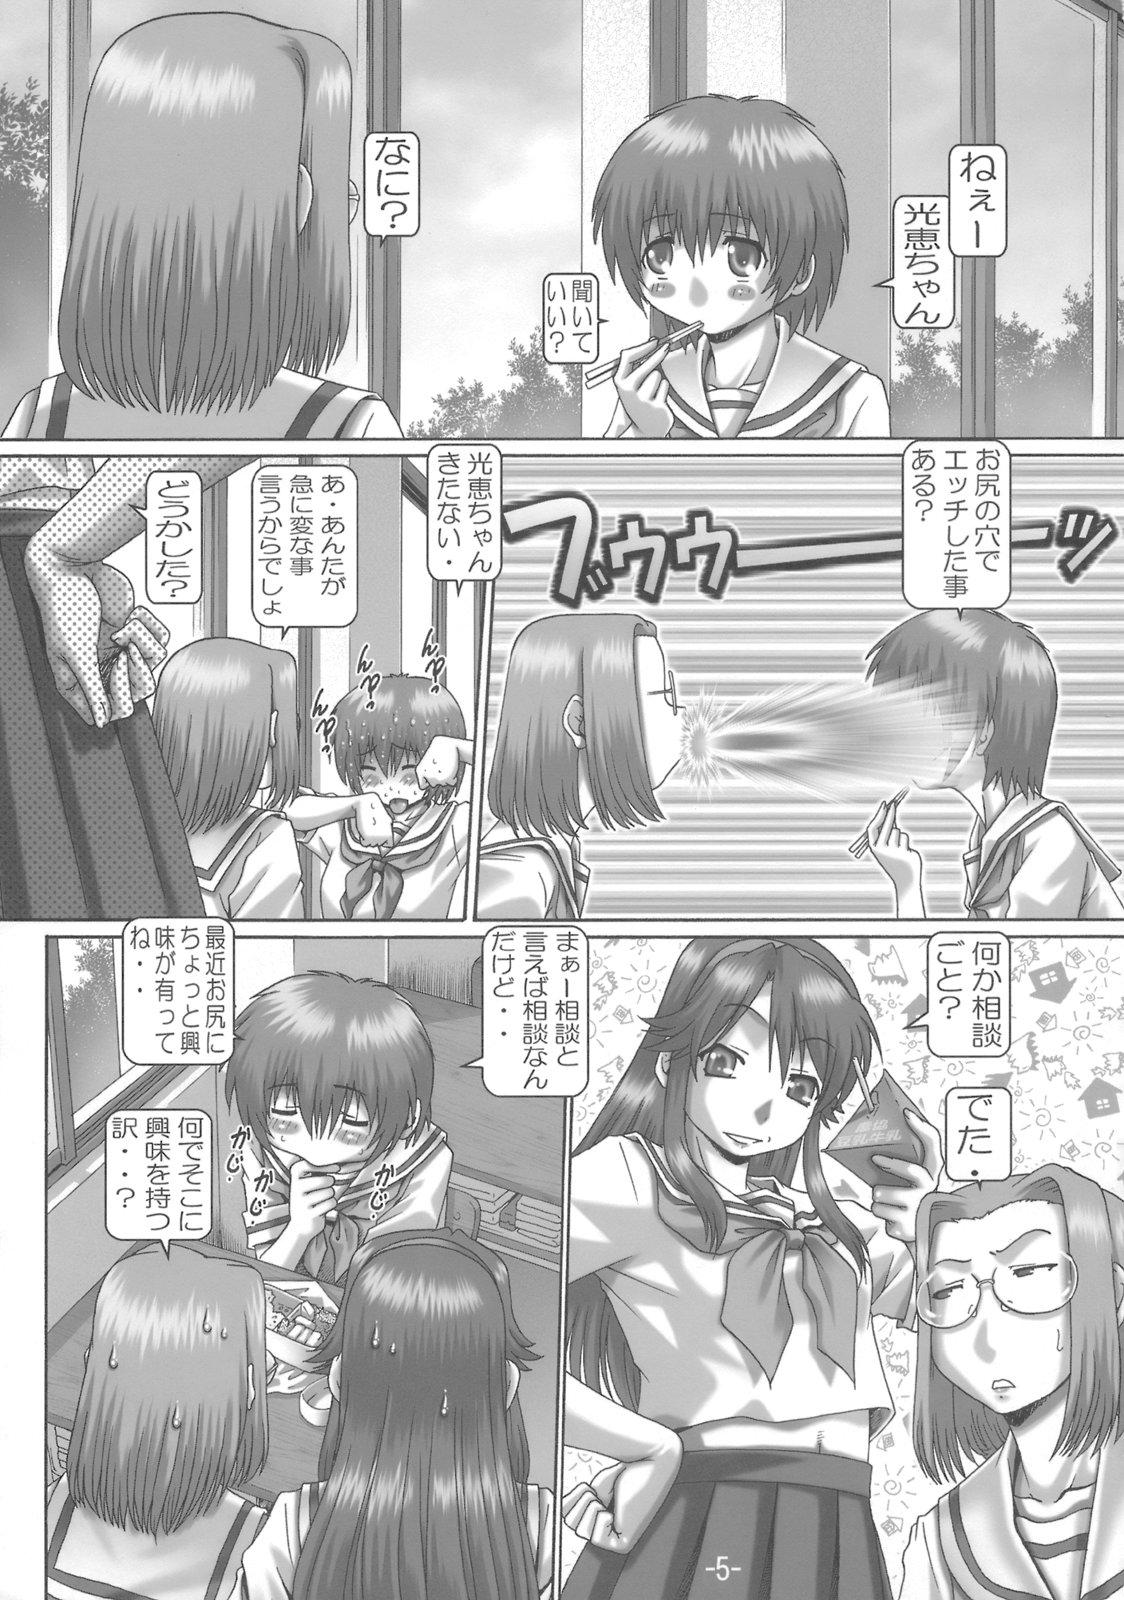 Lez Hardcore EMPIRE HARD CORE 6 - Fate stay night The melancholy of haruhi suzumiya Gundam seed destiny Gundam seed Kamichu Plump - Page 4